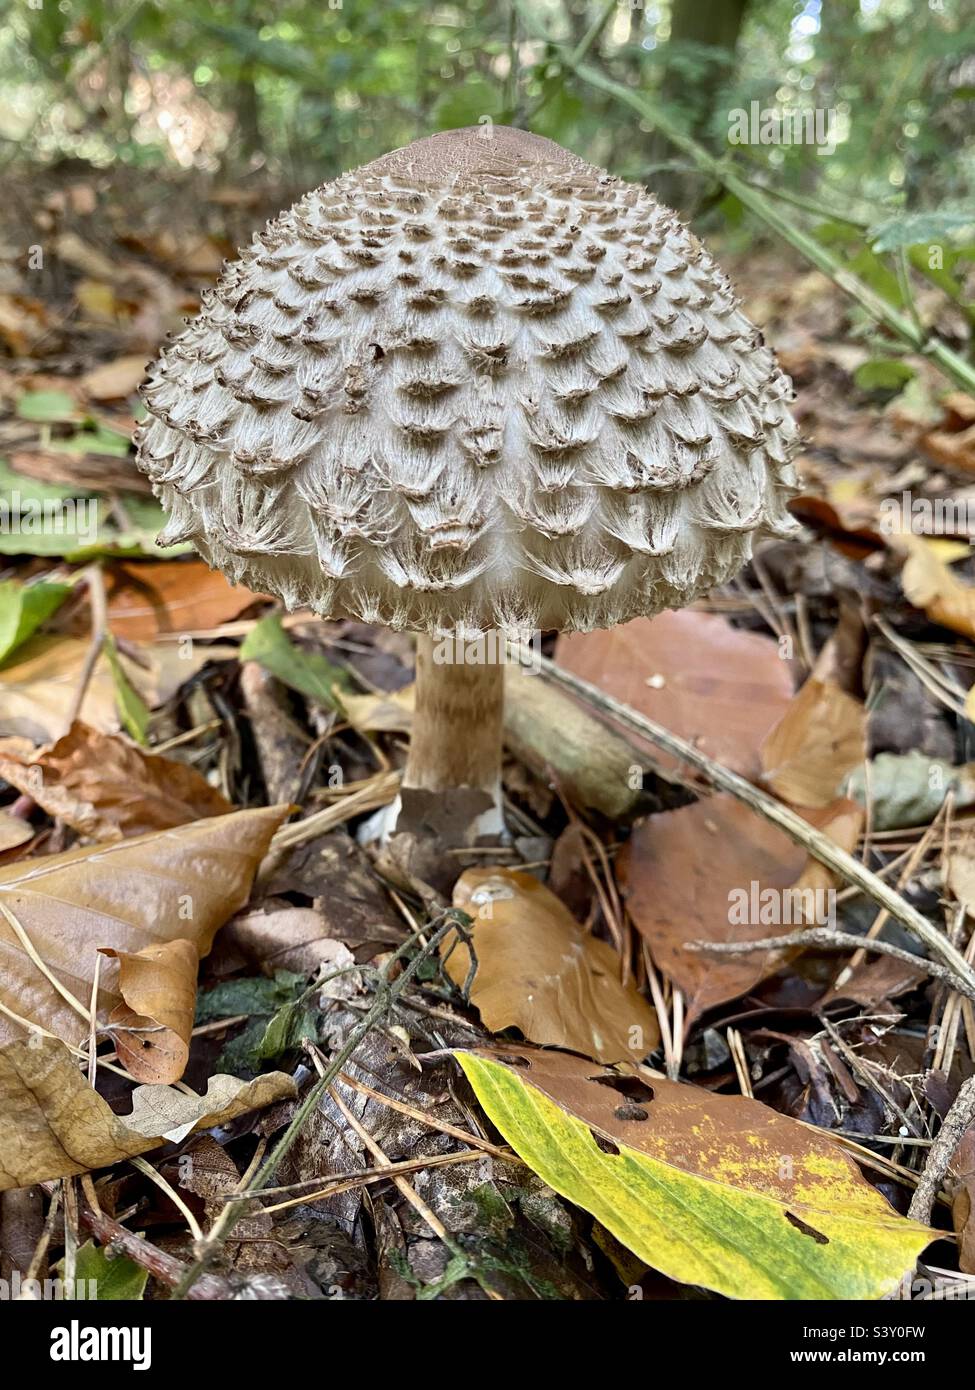 Shaggy Parasol mushroom. Stock Photo